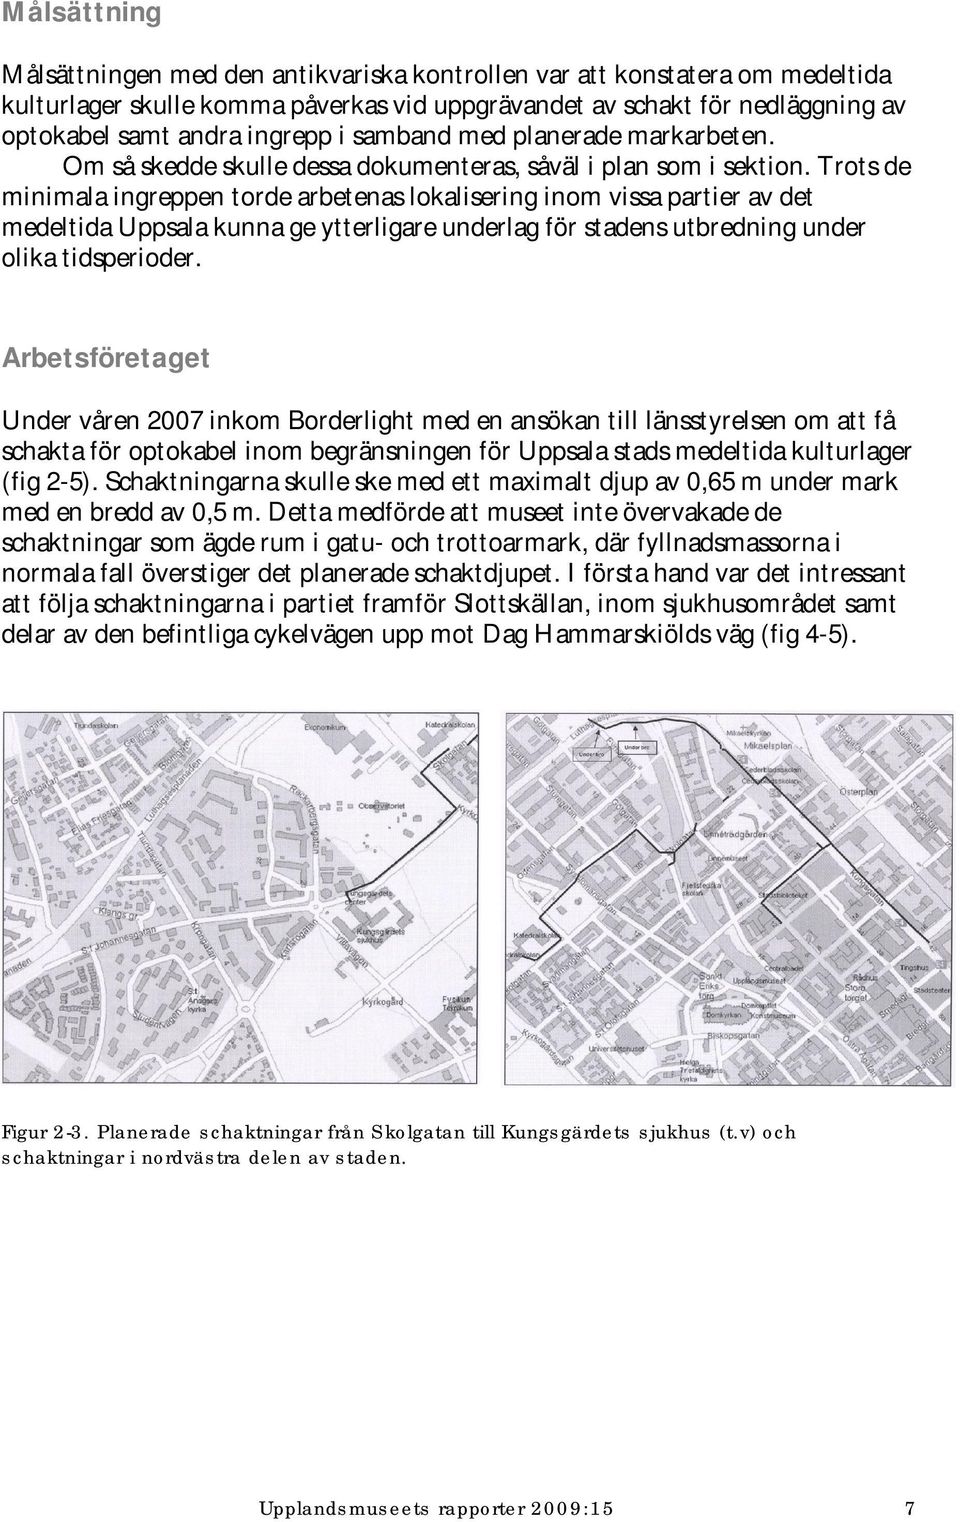 Trots de minimala ingreppen torde arbetenas lokalisering inom vissa partier av det medeltida Uppsala kunna ge ytterligare underlag för stadens utbredning under olika tidsperioder.